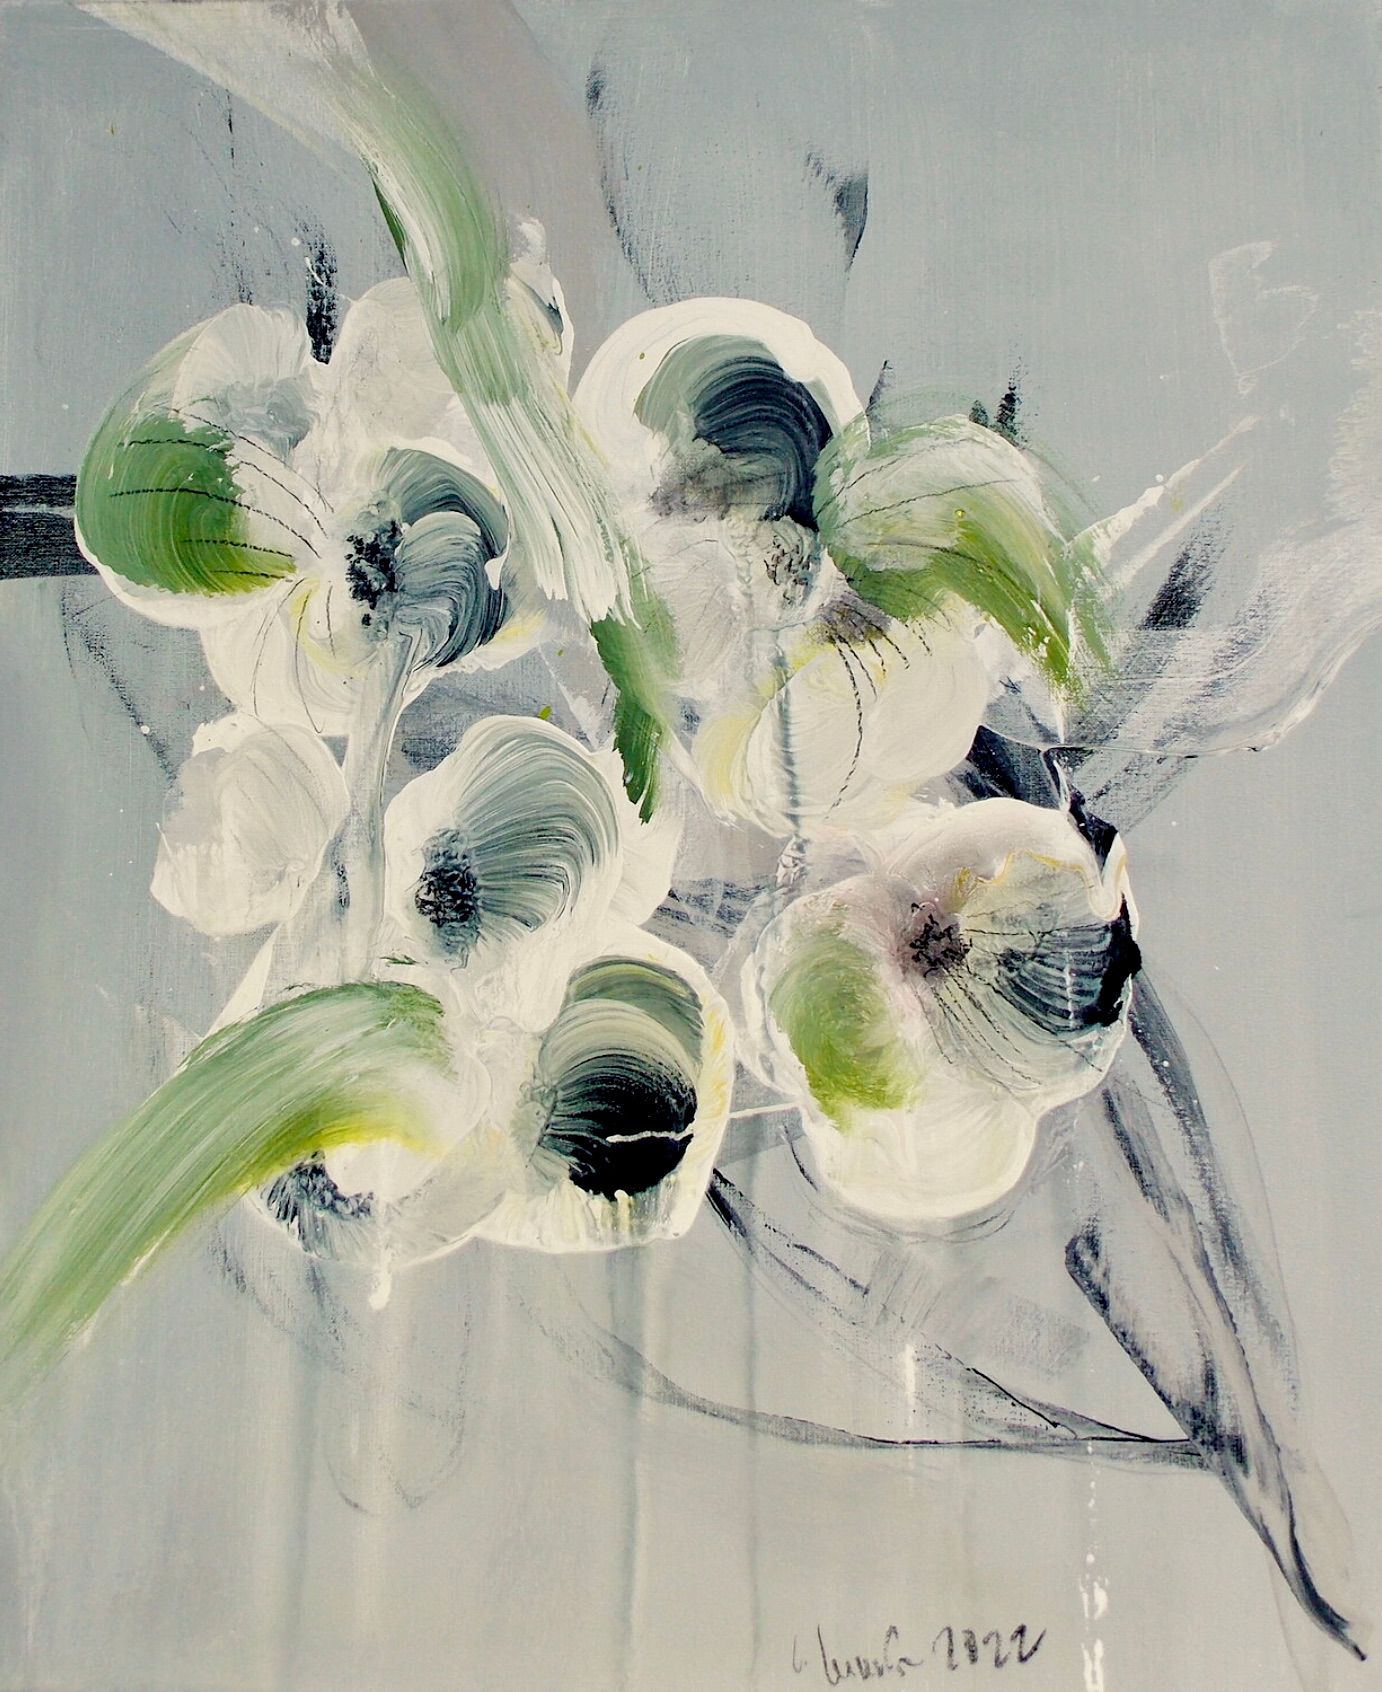 Nel dipinto floreale astratto espressionista "Blumenrausch 1" di Christa Haack dominano i colori beige, verde e nero.